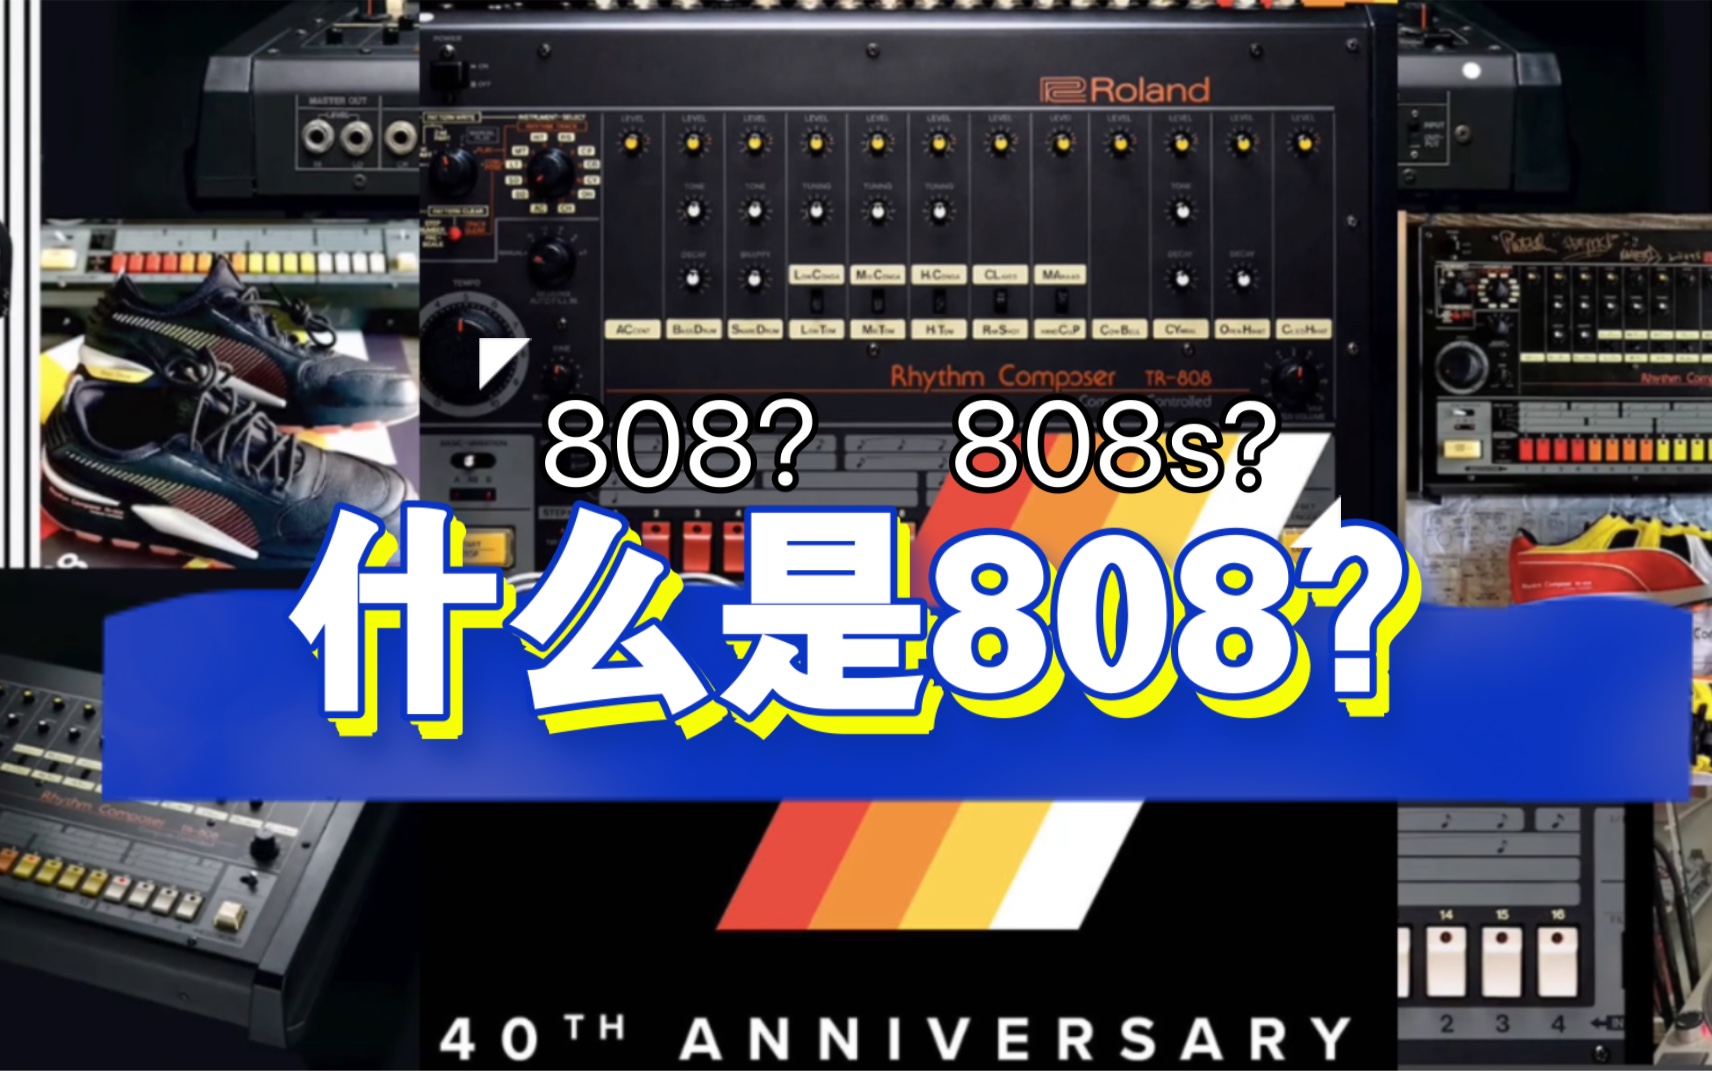 什么是808？808s和808是一个东西吗？每天一个嘻哈小知识